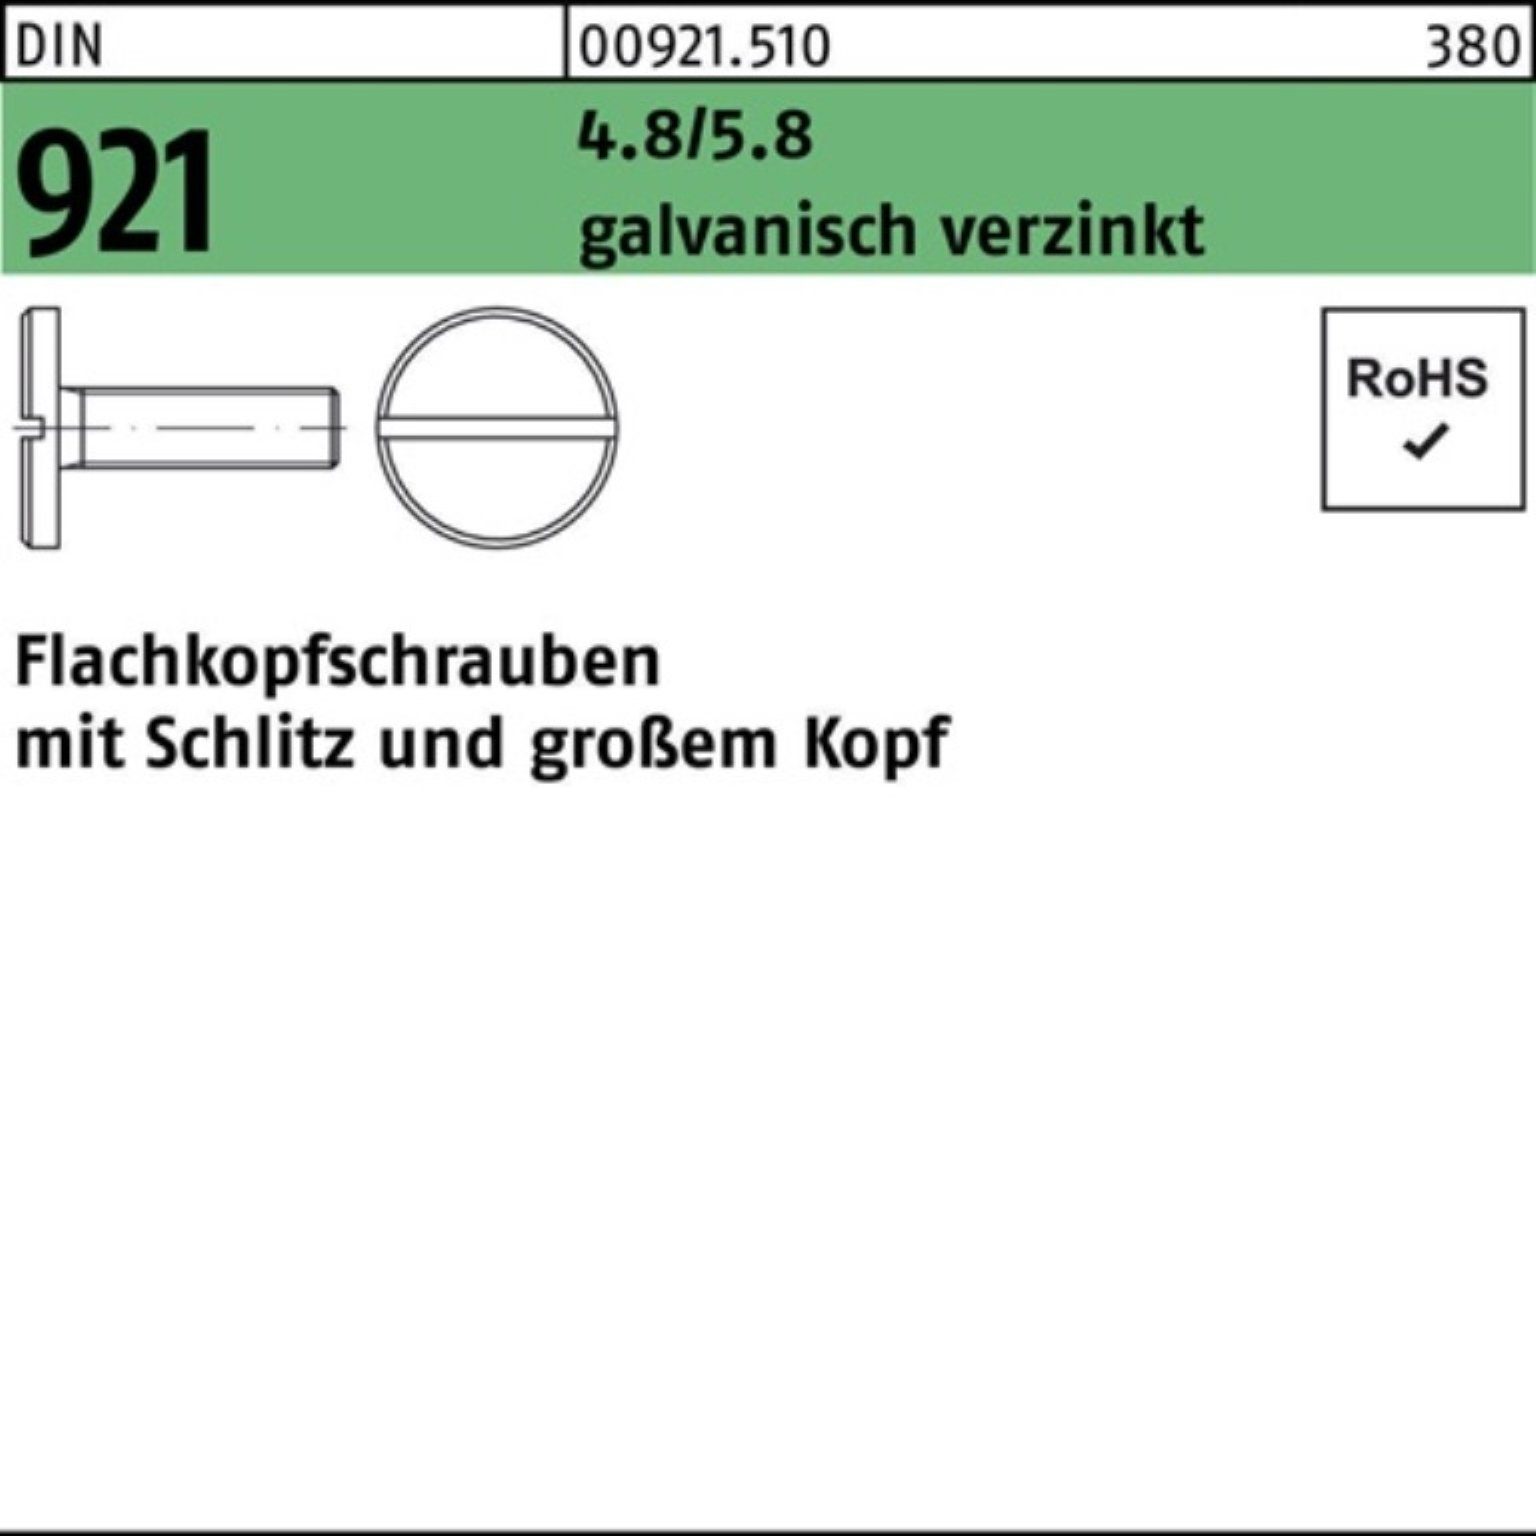 M8x 921 Reyher galv.verz. Schlitz 4.8/5.8 Flachkopfschraube DIN Pack 100er 10 Schraube